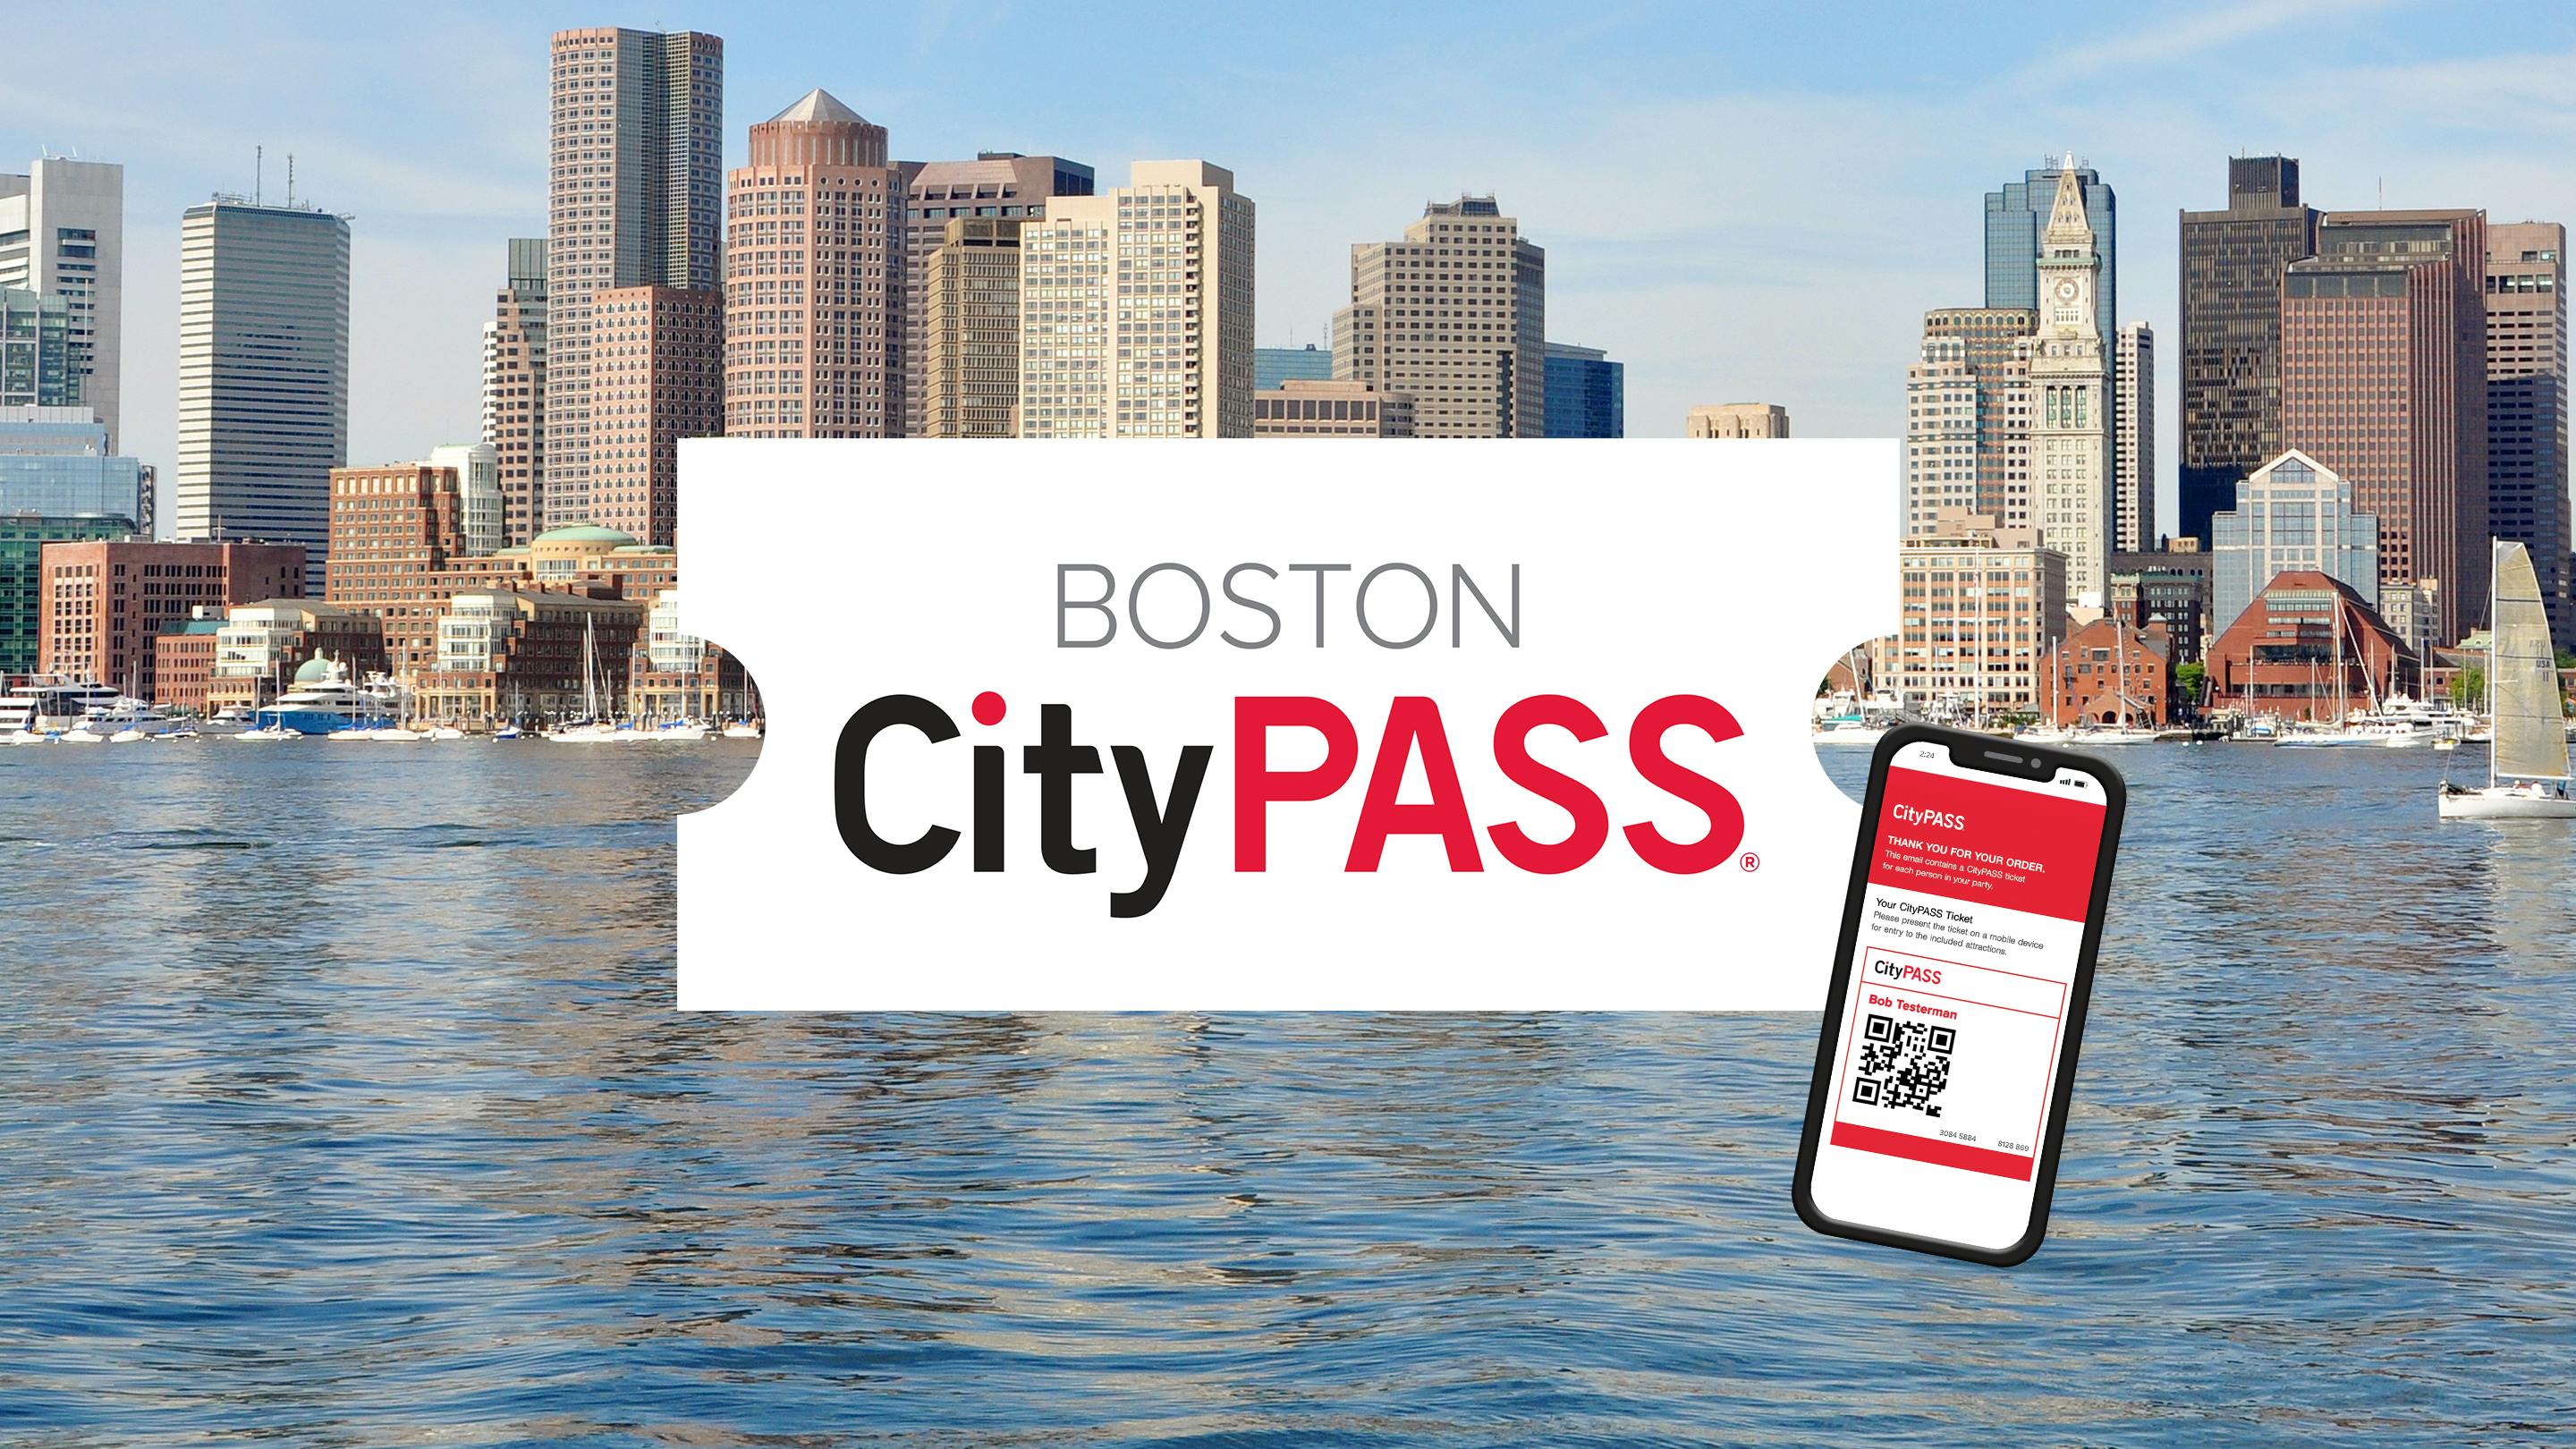 Boston CityPASS mobilbillet